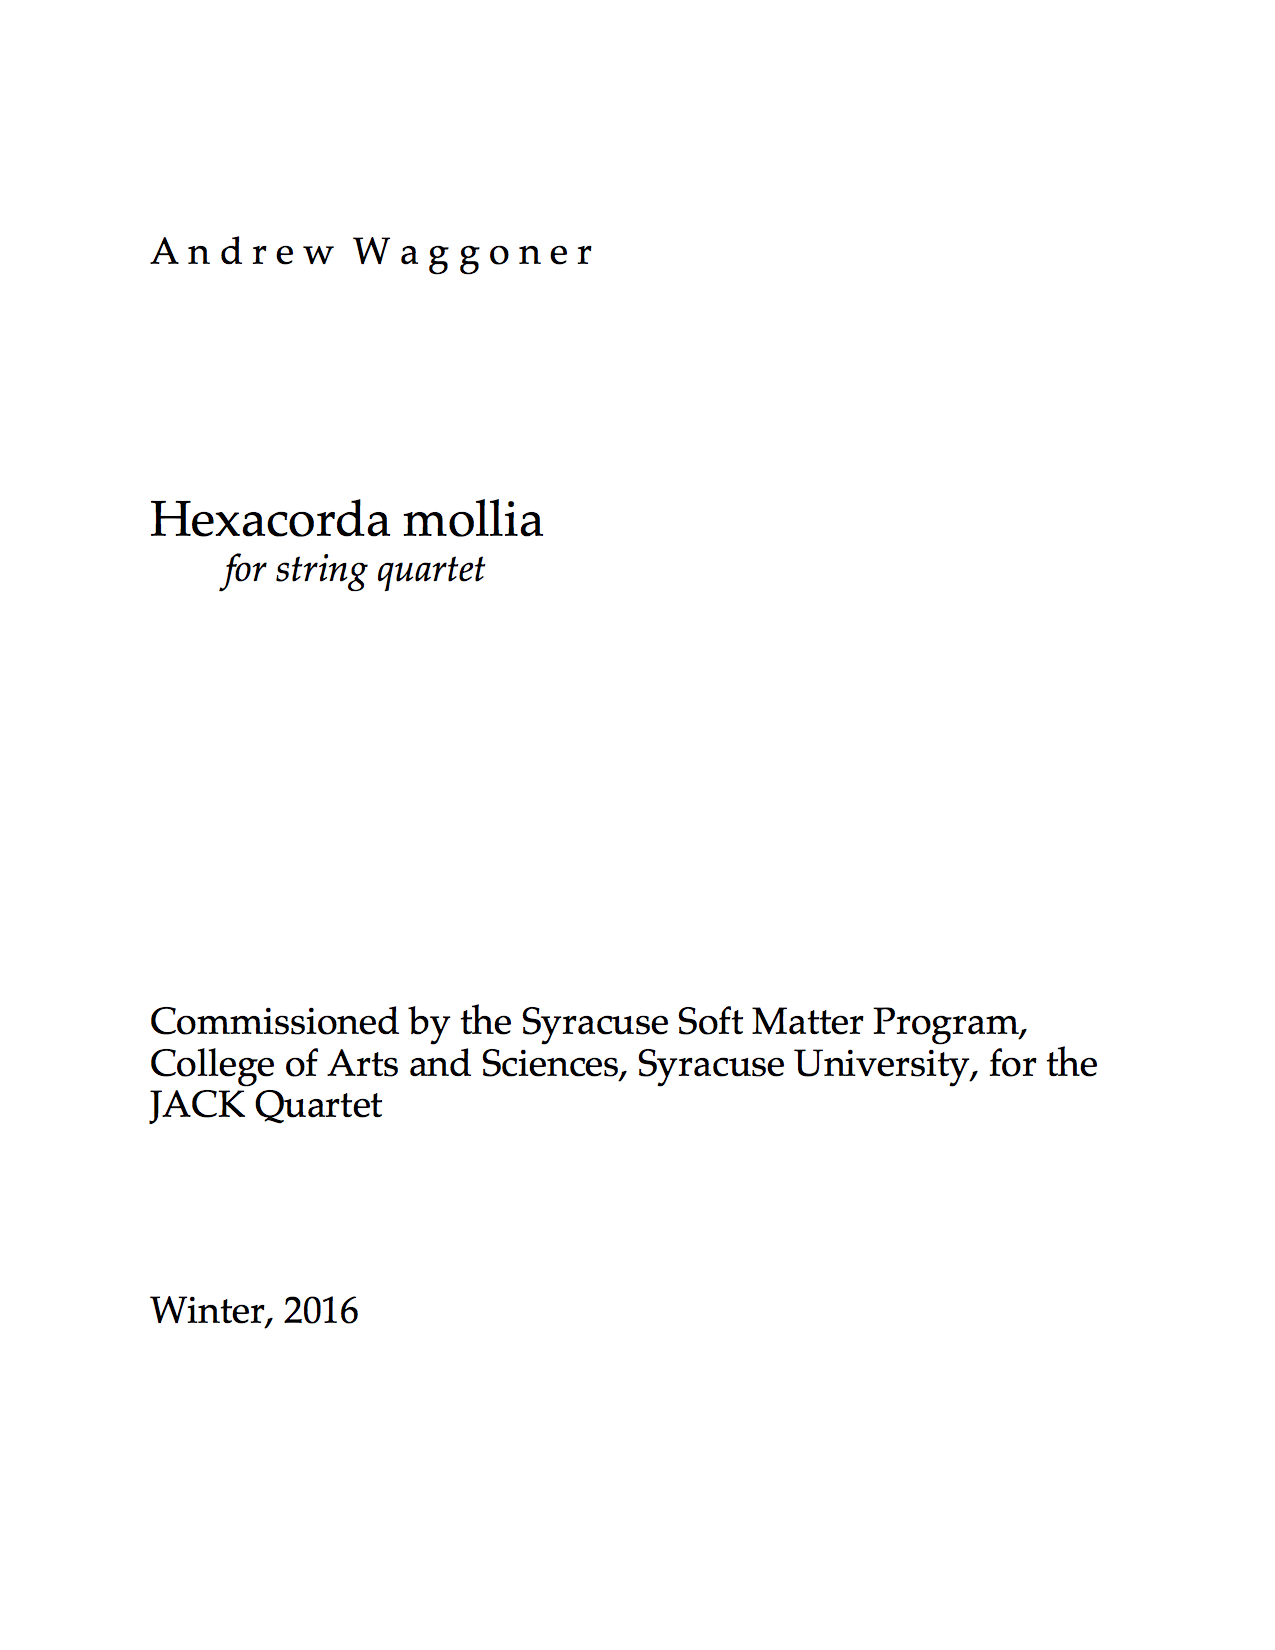 Hexachorda mollia for String Quartet